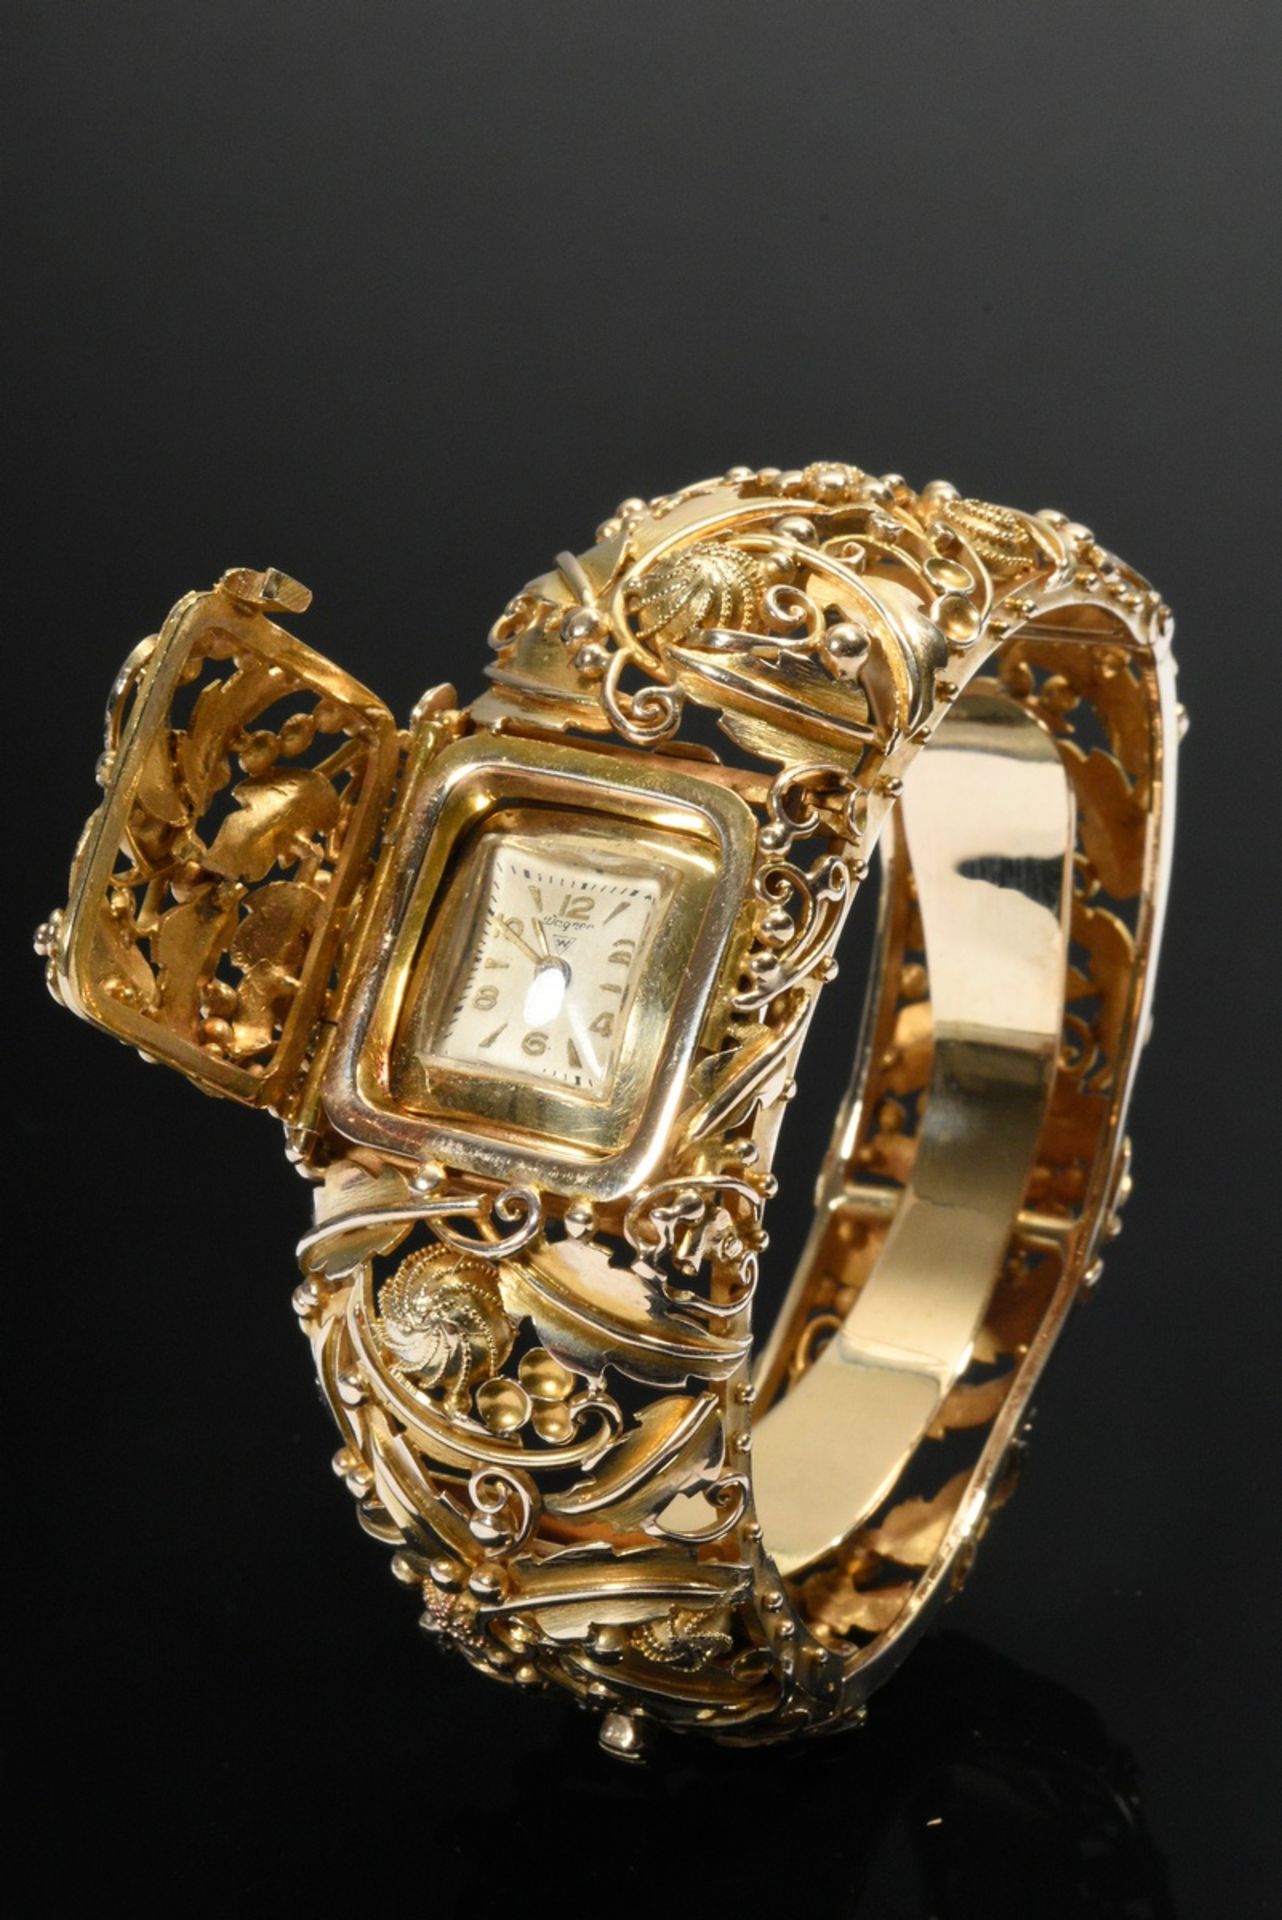 Ovale Gelbgold 585 Armspange mit versteckter Wagner Uhr unter Klappdeckel, allseitige Blatt- und Bl - Bild 2 aus 6